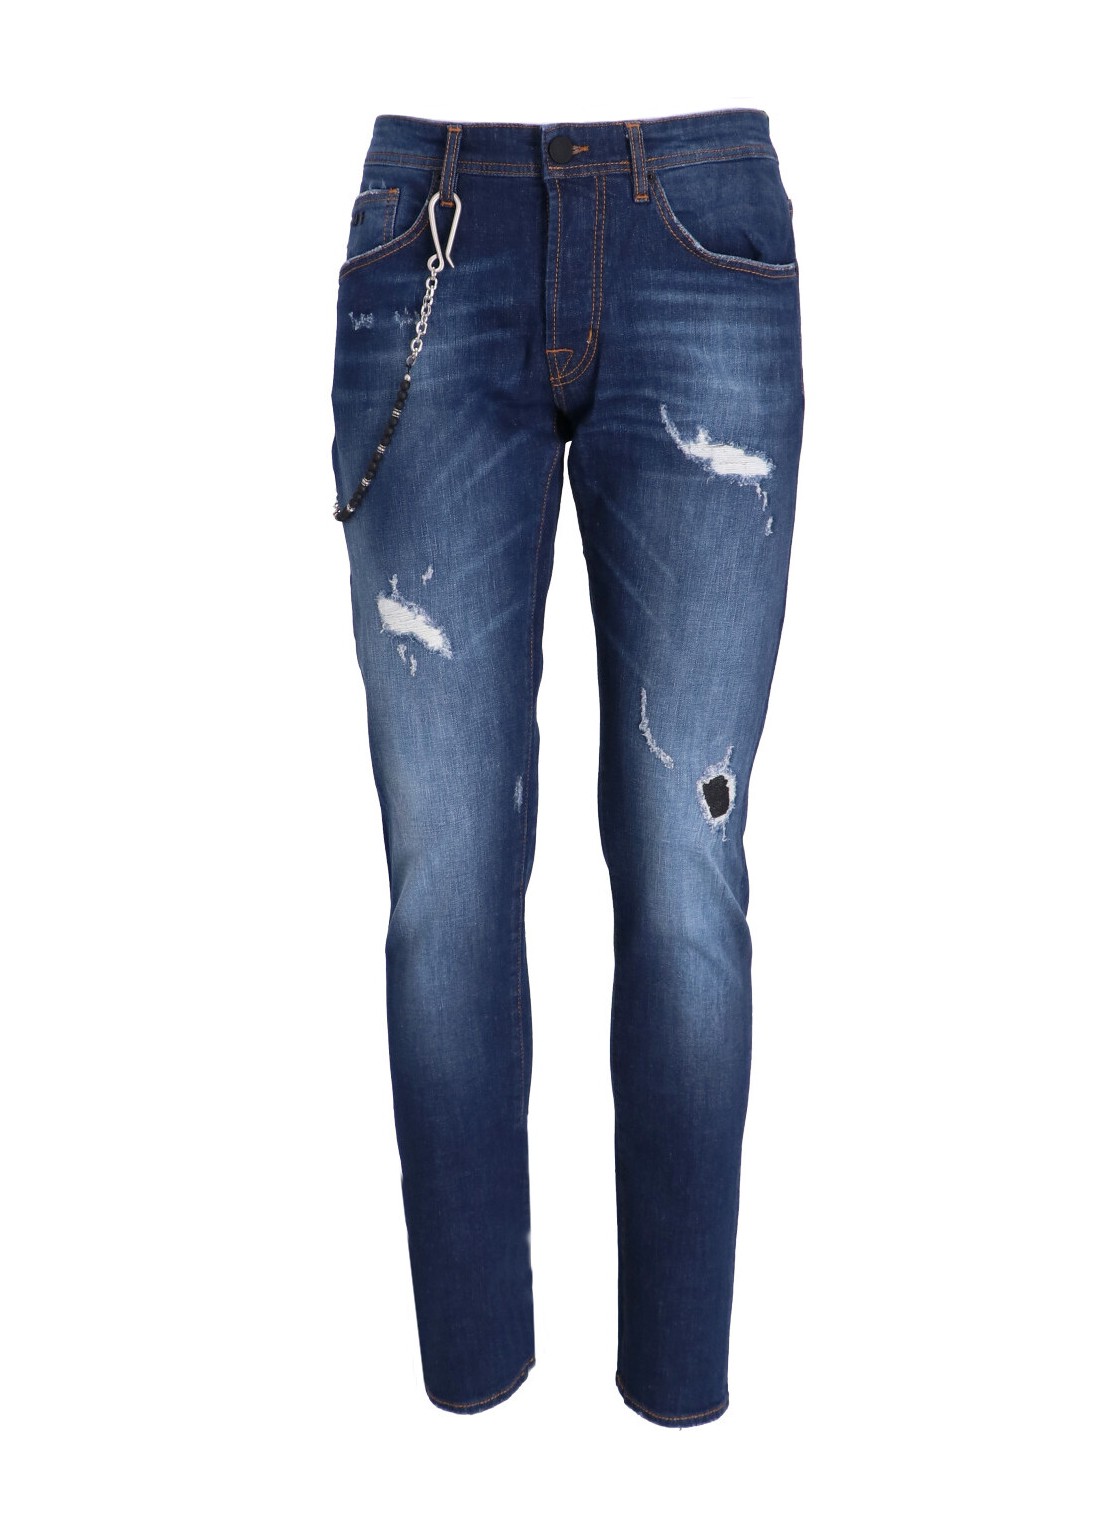 Pantalon jeans tramarossa denim man 1980 1980 23150 talla 34
 